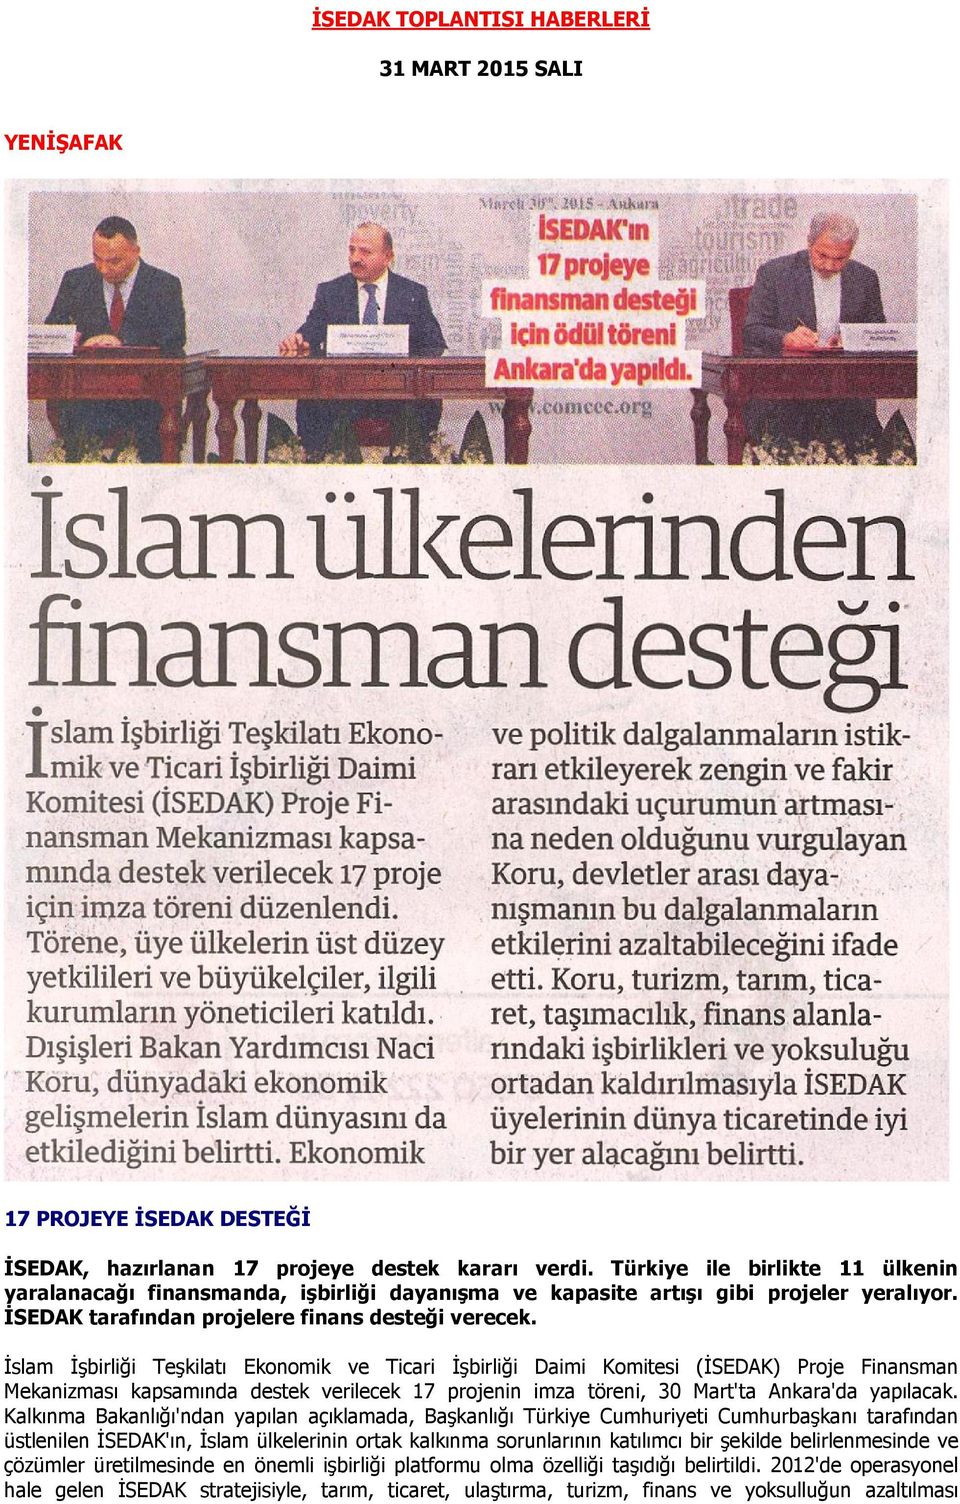 Mekanizması kapsamında destek verilecek 17 projenin imza töreni, 30 Mart'ta Ankara'da yapılacak.